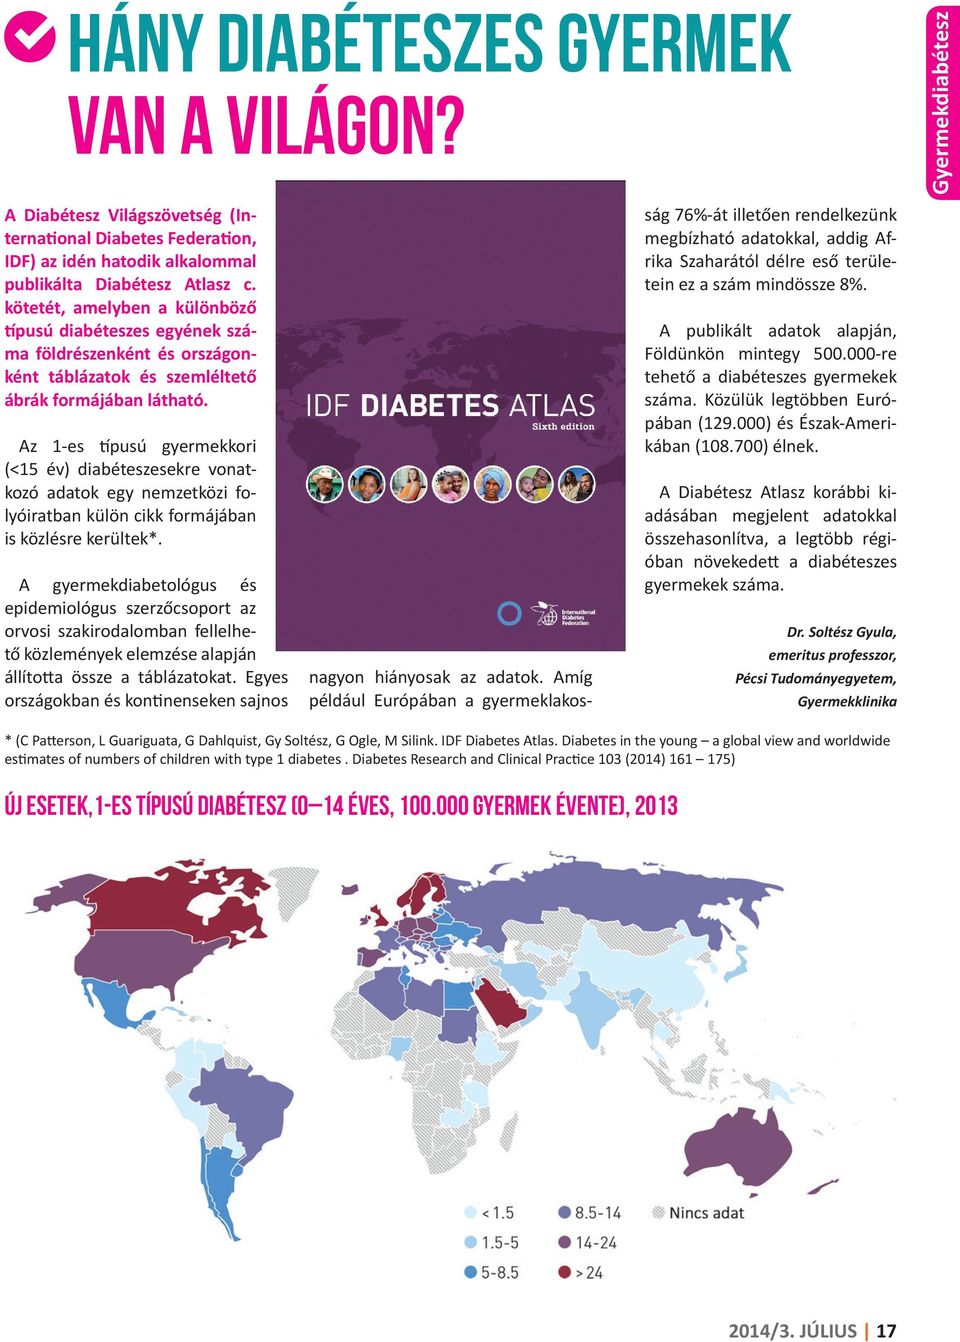 Az 1-es típusú gyermekkori (<15 év) diabéteszesekre vonatkozó adatok egy nemzetközi folyóiratban külön cikk formájában is közlésre kerültek*.